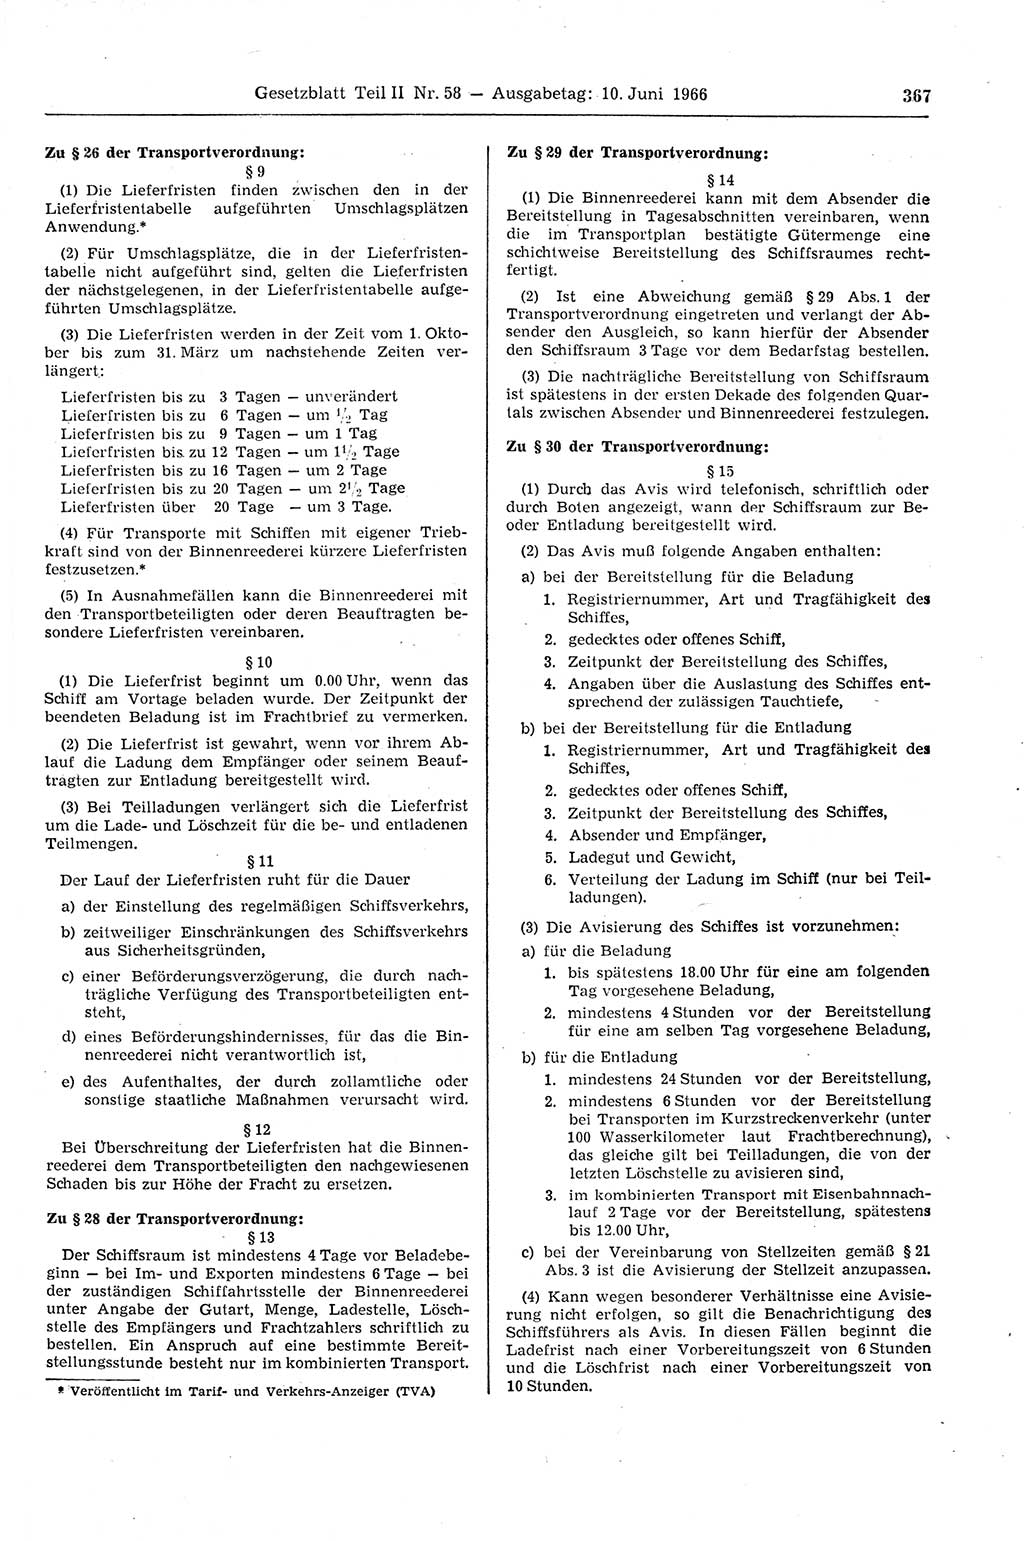 Gesetzblatt (GBl.) der Deutschen Demokratischen Republik (DDR) Teil ⅠⅠ 1966, Seite 367 (GBl. DDR ⅠⅠ 1966, S. 367)